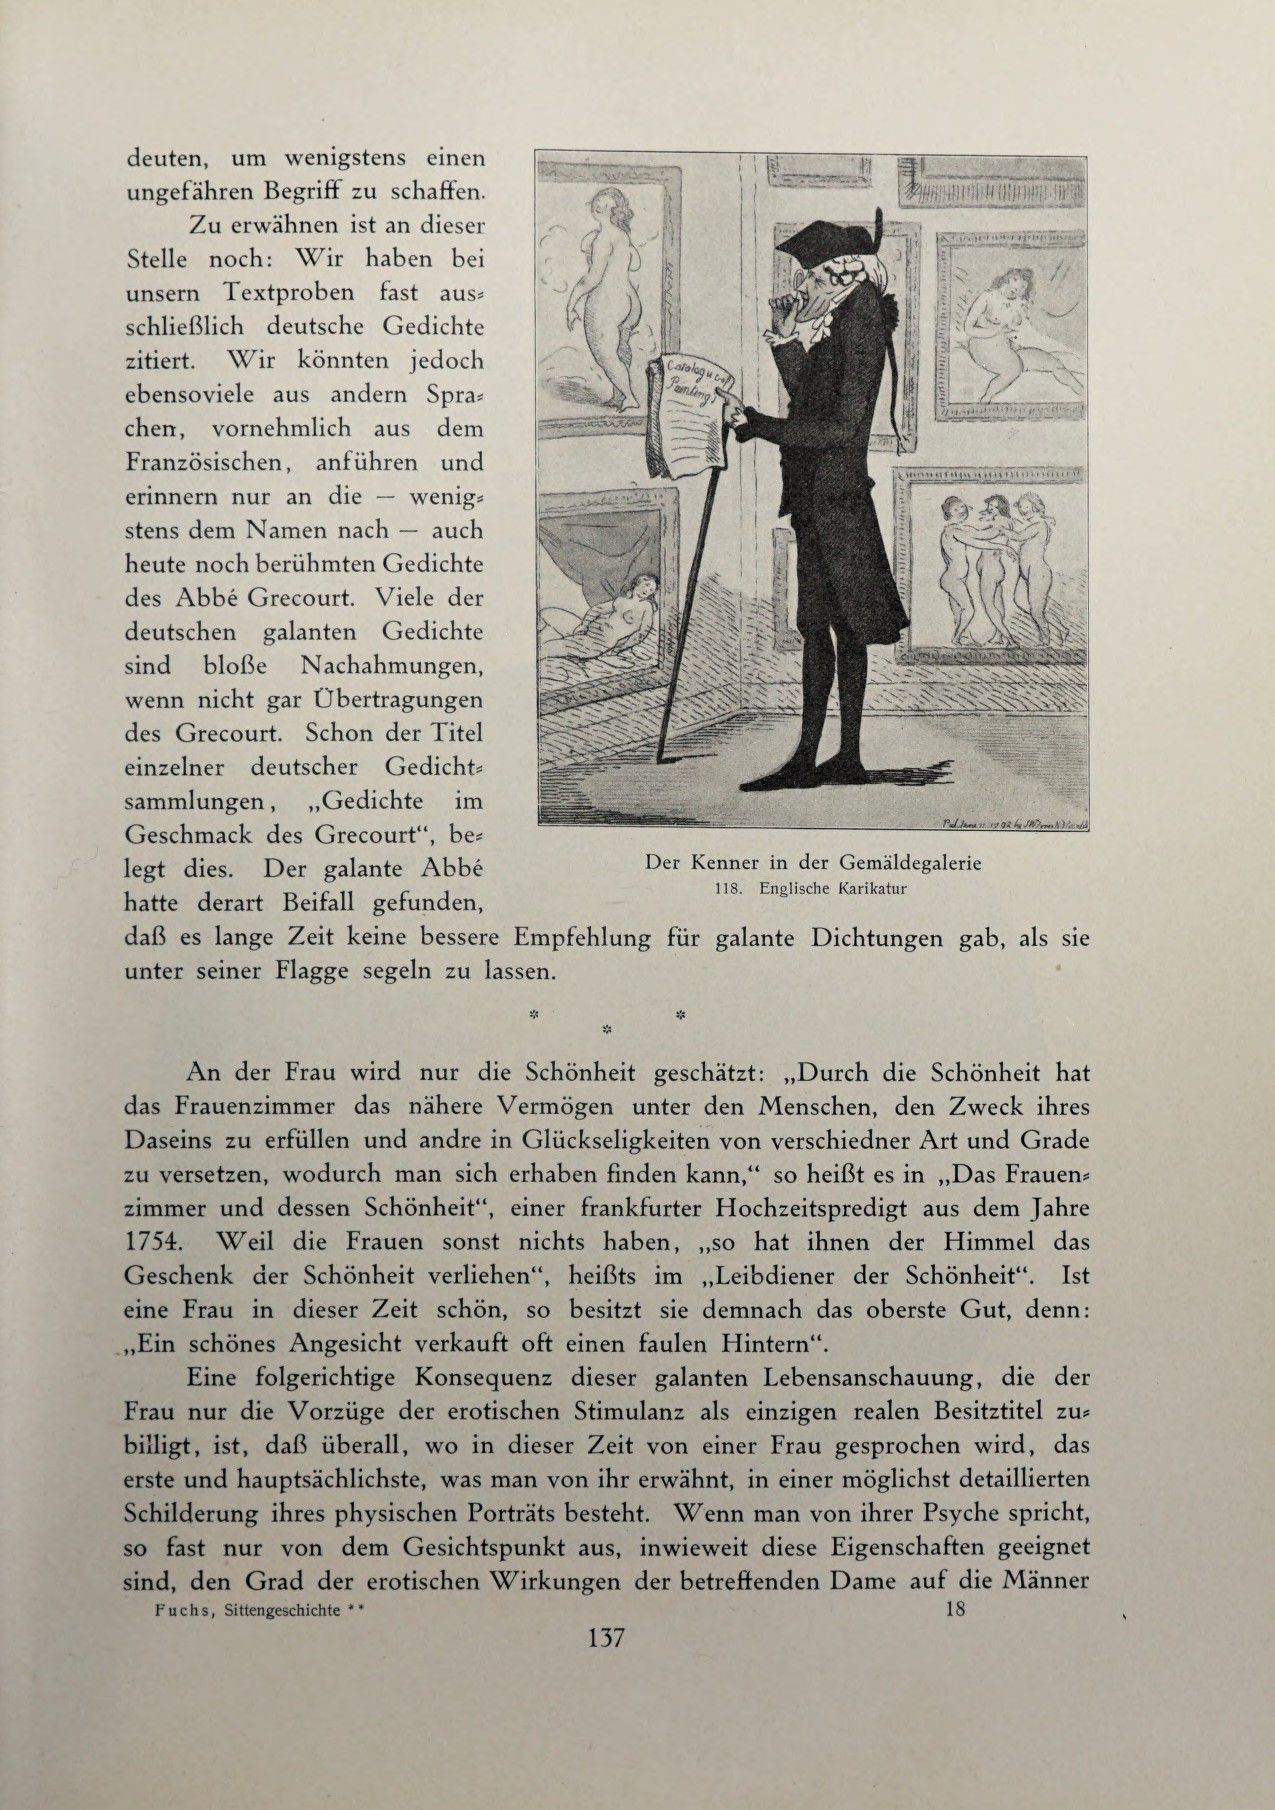 [Eduard Fuchs] Illustrierte Sittengeschichte vom Mittelalter bis zur Gegenwart: Bd. 2. and Ergänzungsband. Die galante Zeit [German] 210